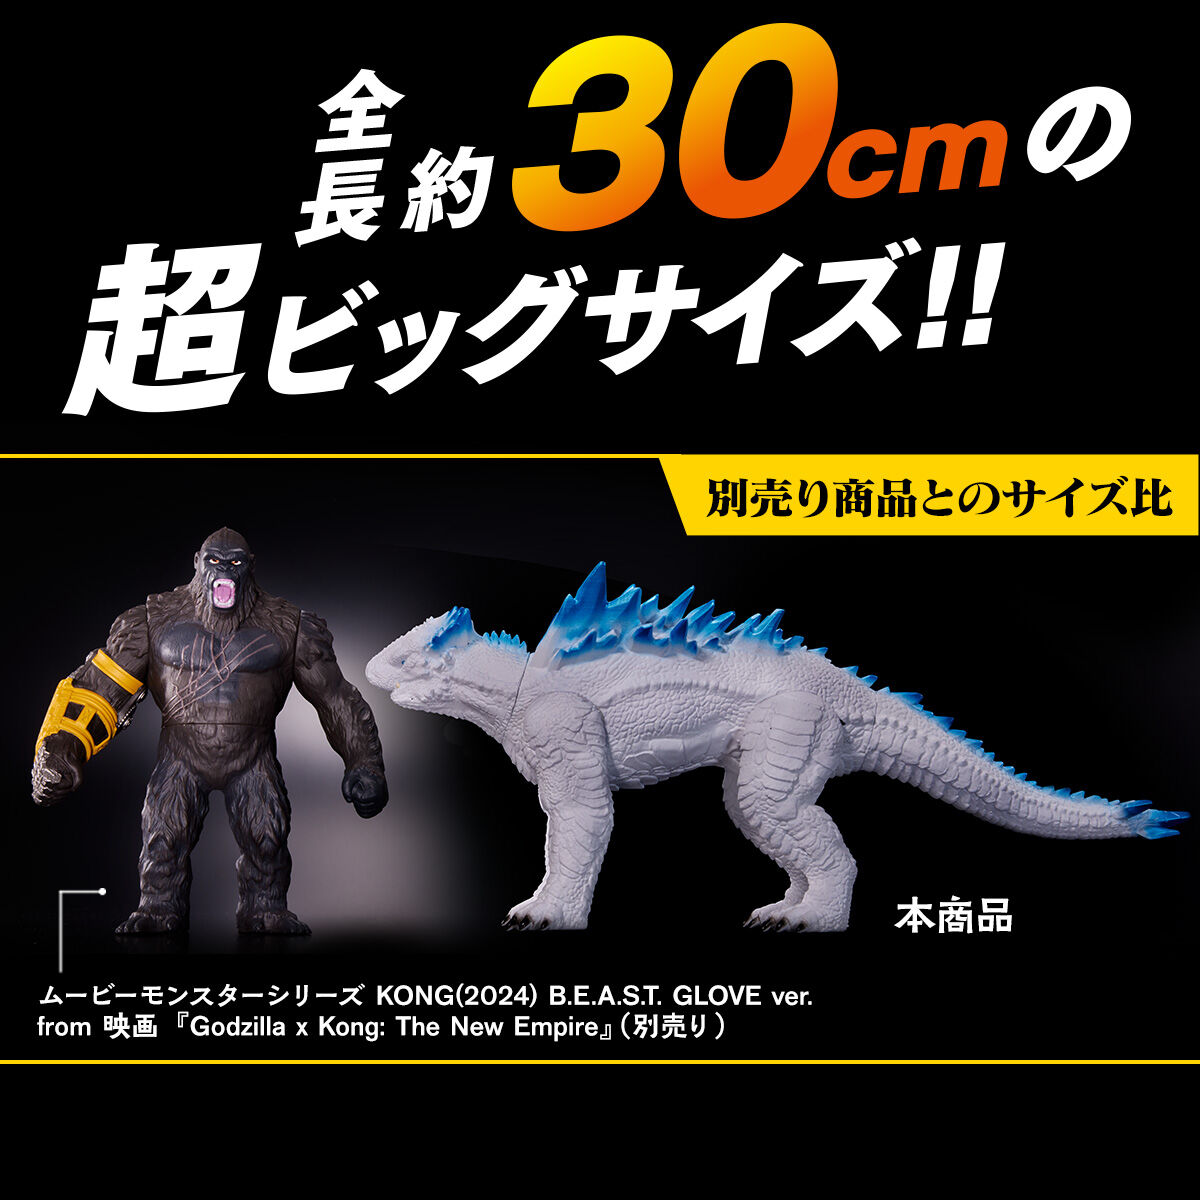 【限定販売】ムービーモンスターシリーズSHIMO & SKAR KINGセット from 映画『Godzilla x Kong: The NewEmpire』ソフビフィギュア-005